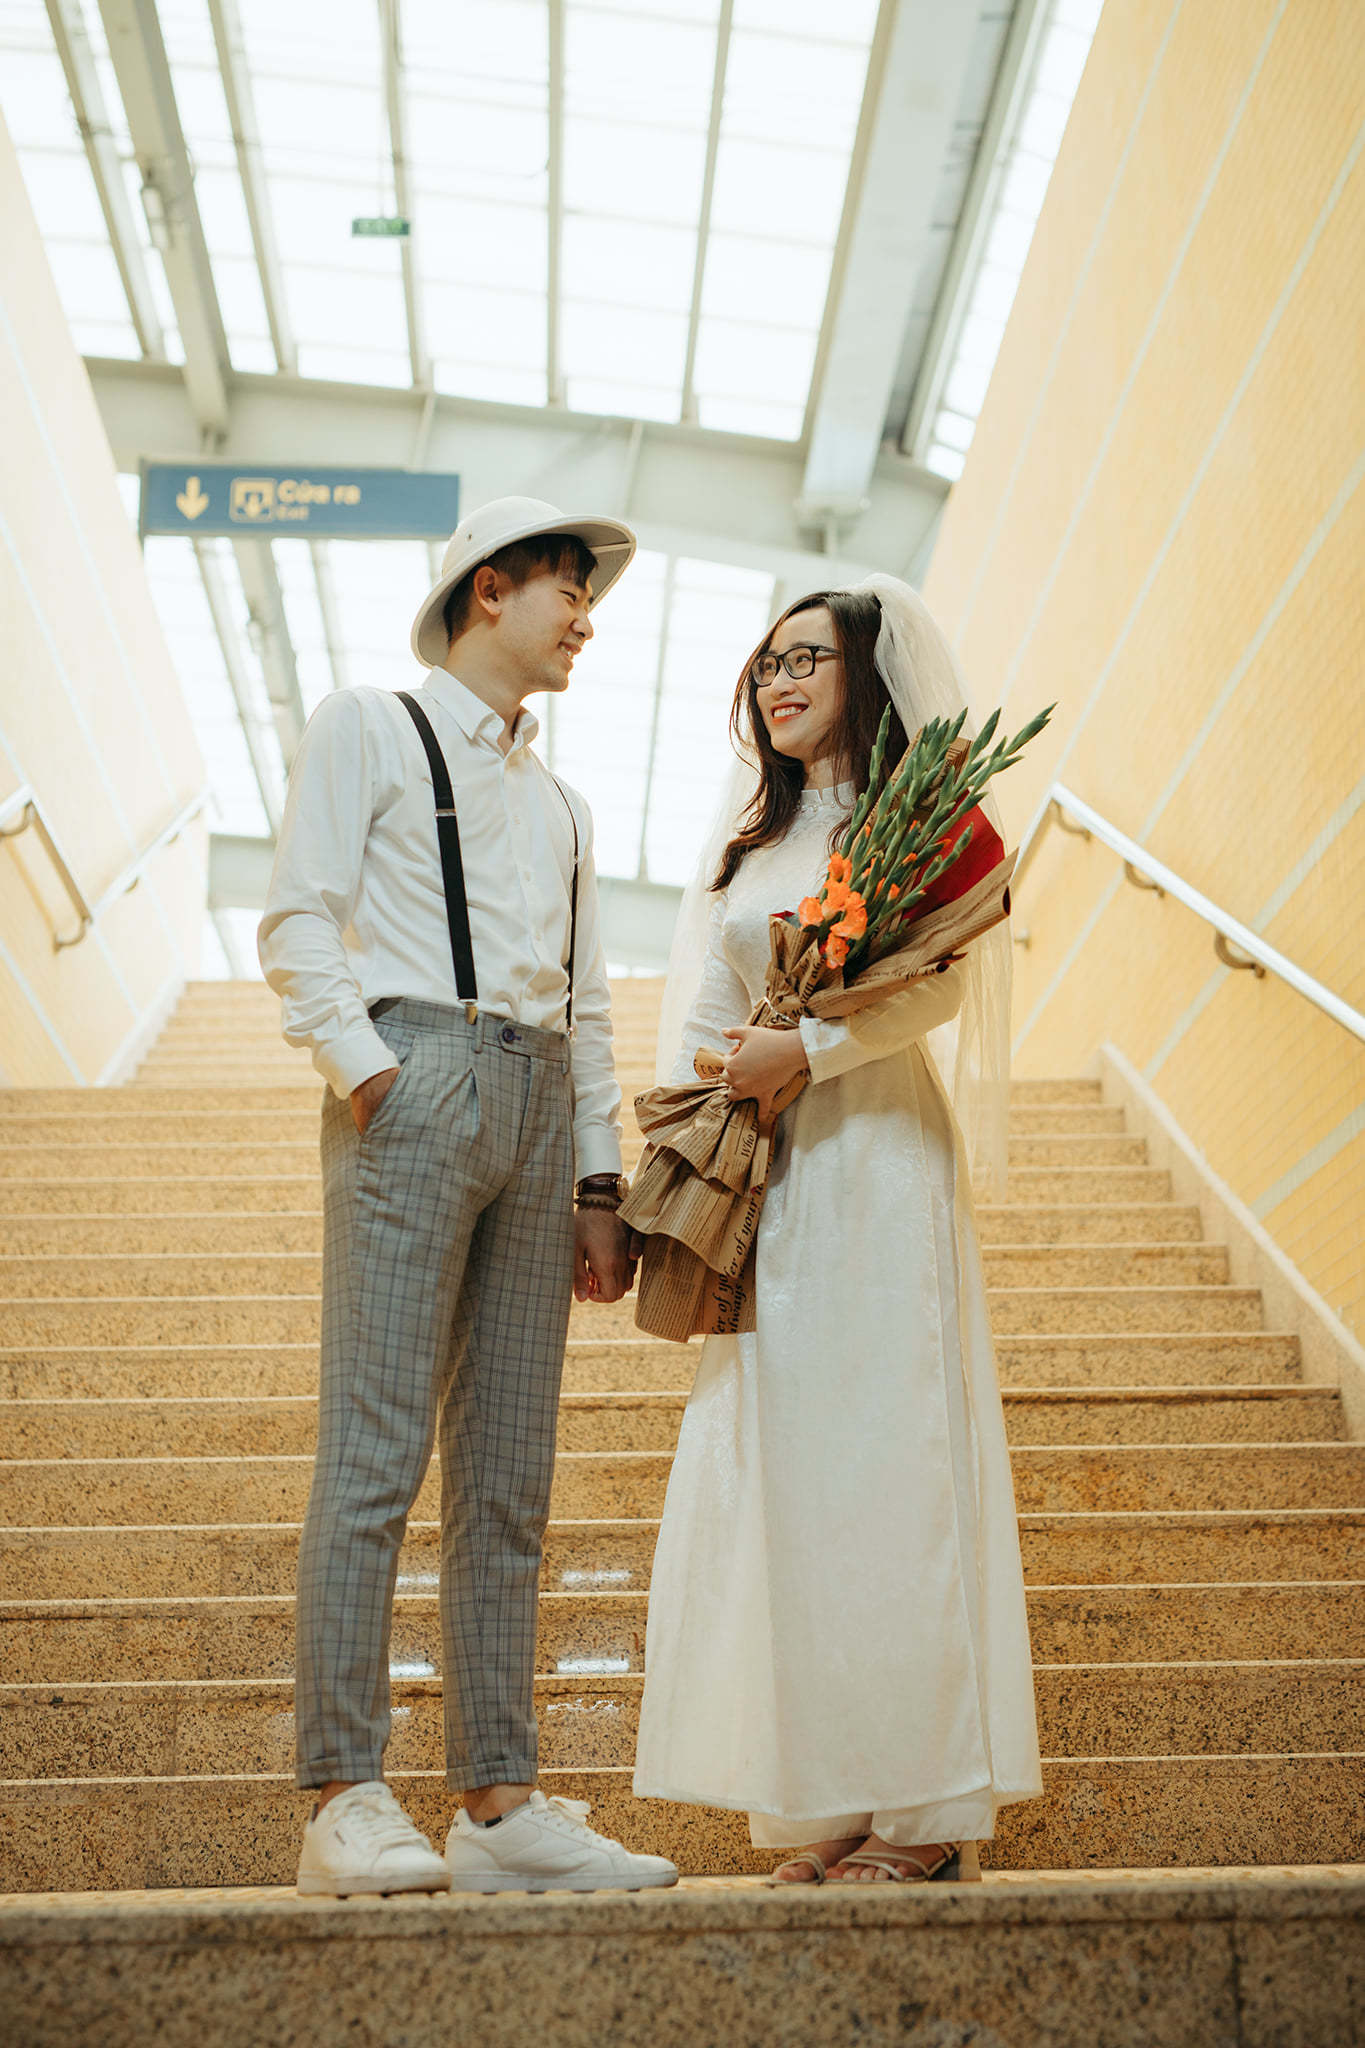  Đôi bạn trẻ chụp ảnh cưới tuyệt đẹp tại đường sắt Cát Linh - Hà Đông  - Ảnh 1